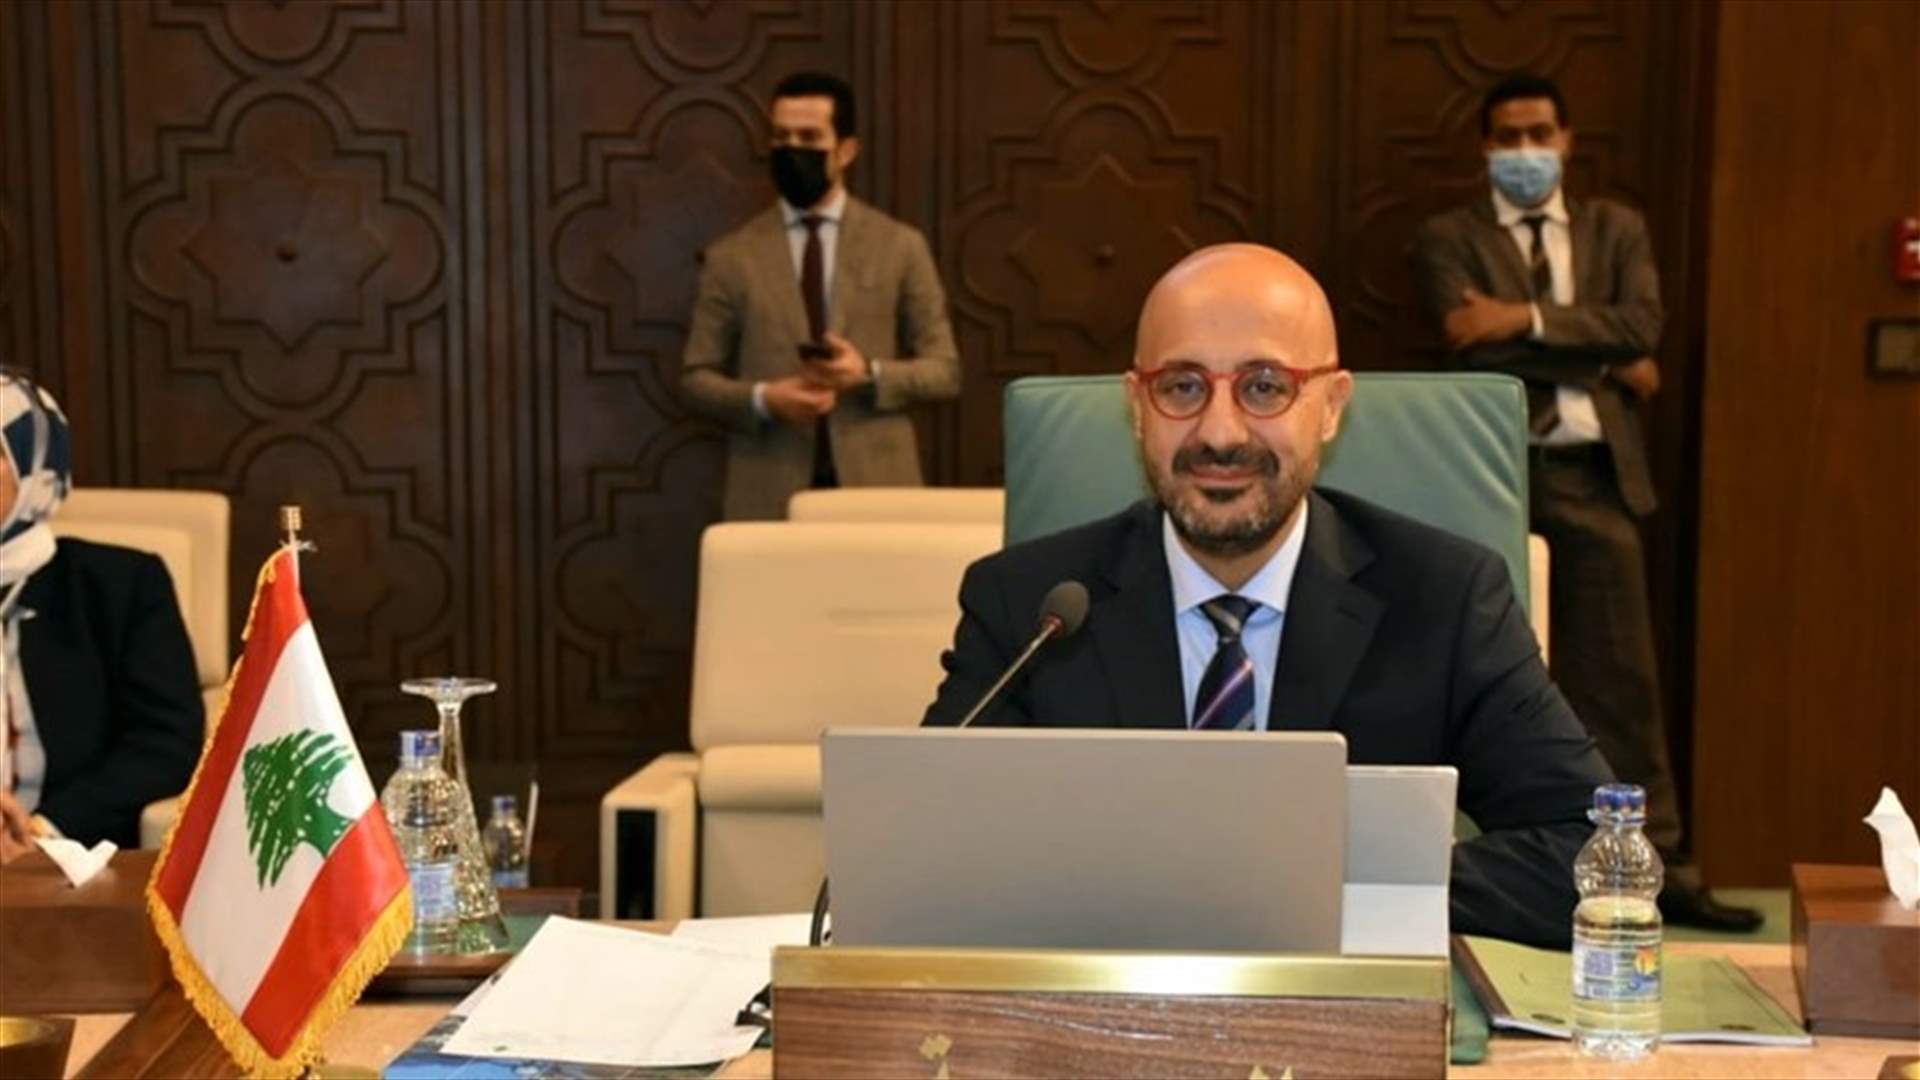 ياسين شدد أمام مجلس وزراء البيئة العرب على أهمية احتضان لبنان لإنقاذه